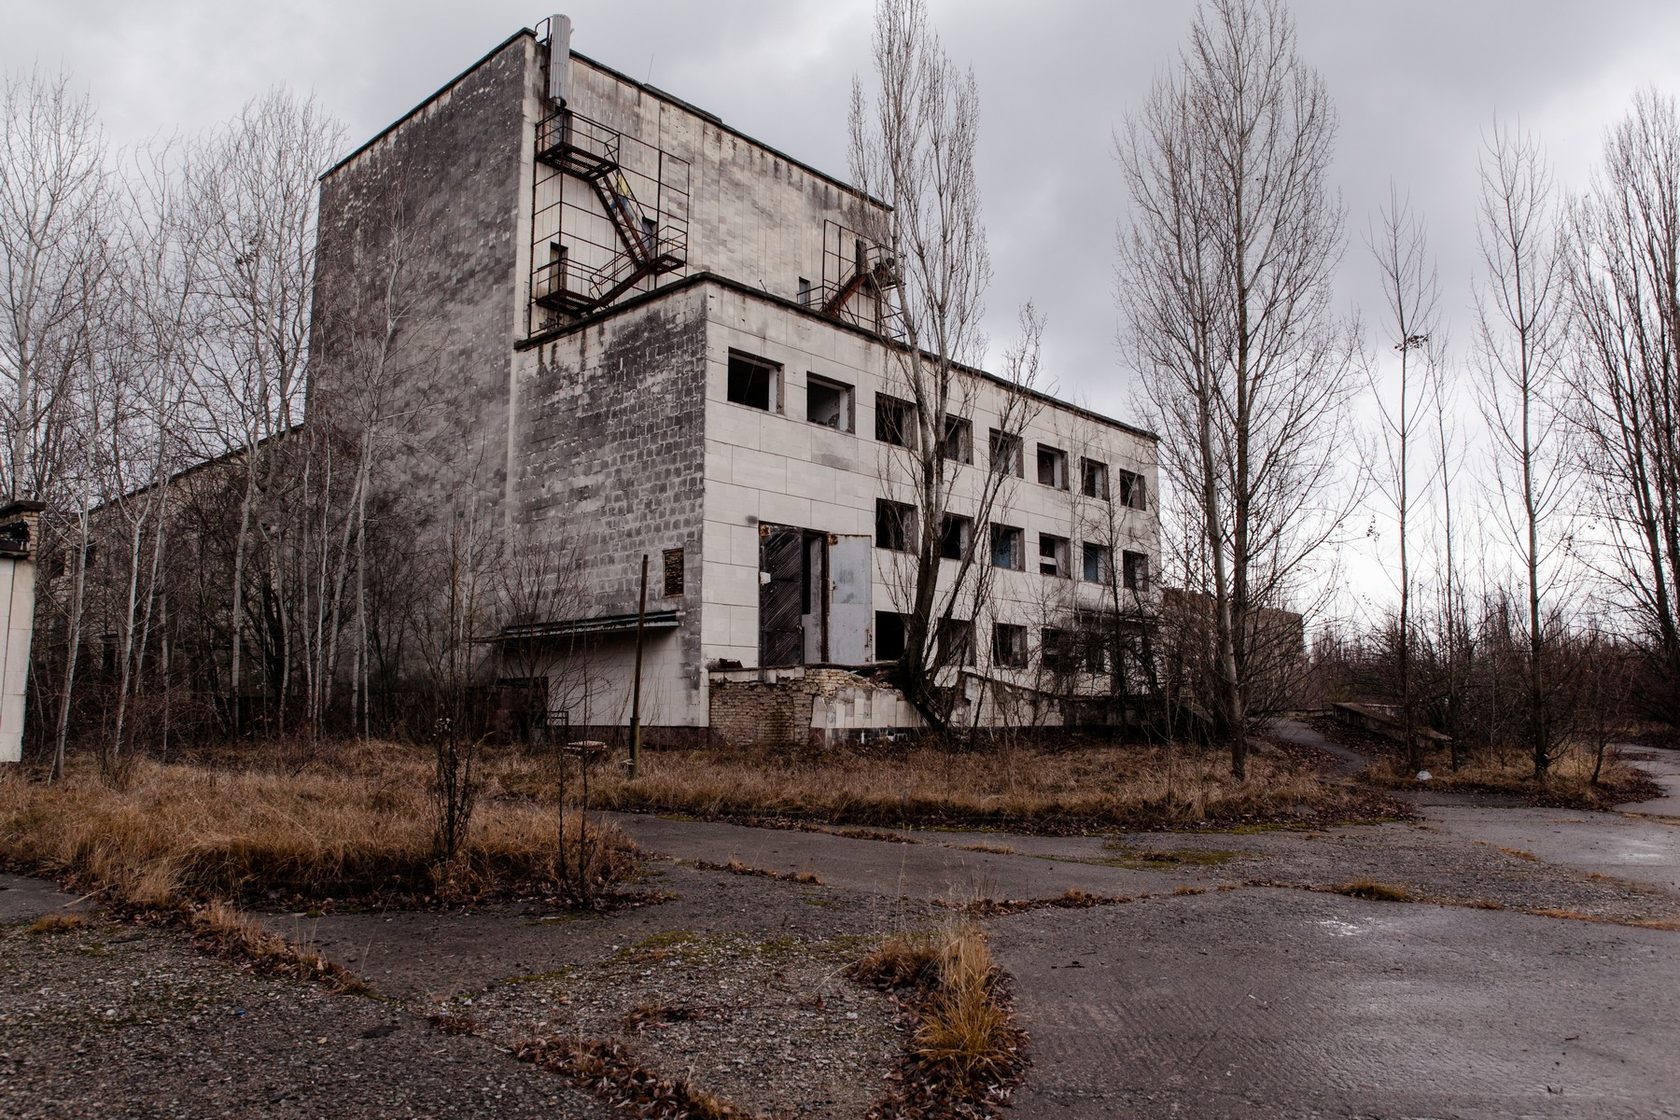 Припять Чернобыль ЧАЭС зона отчуждения